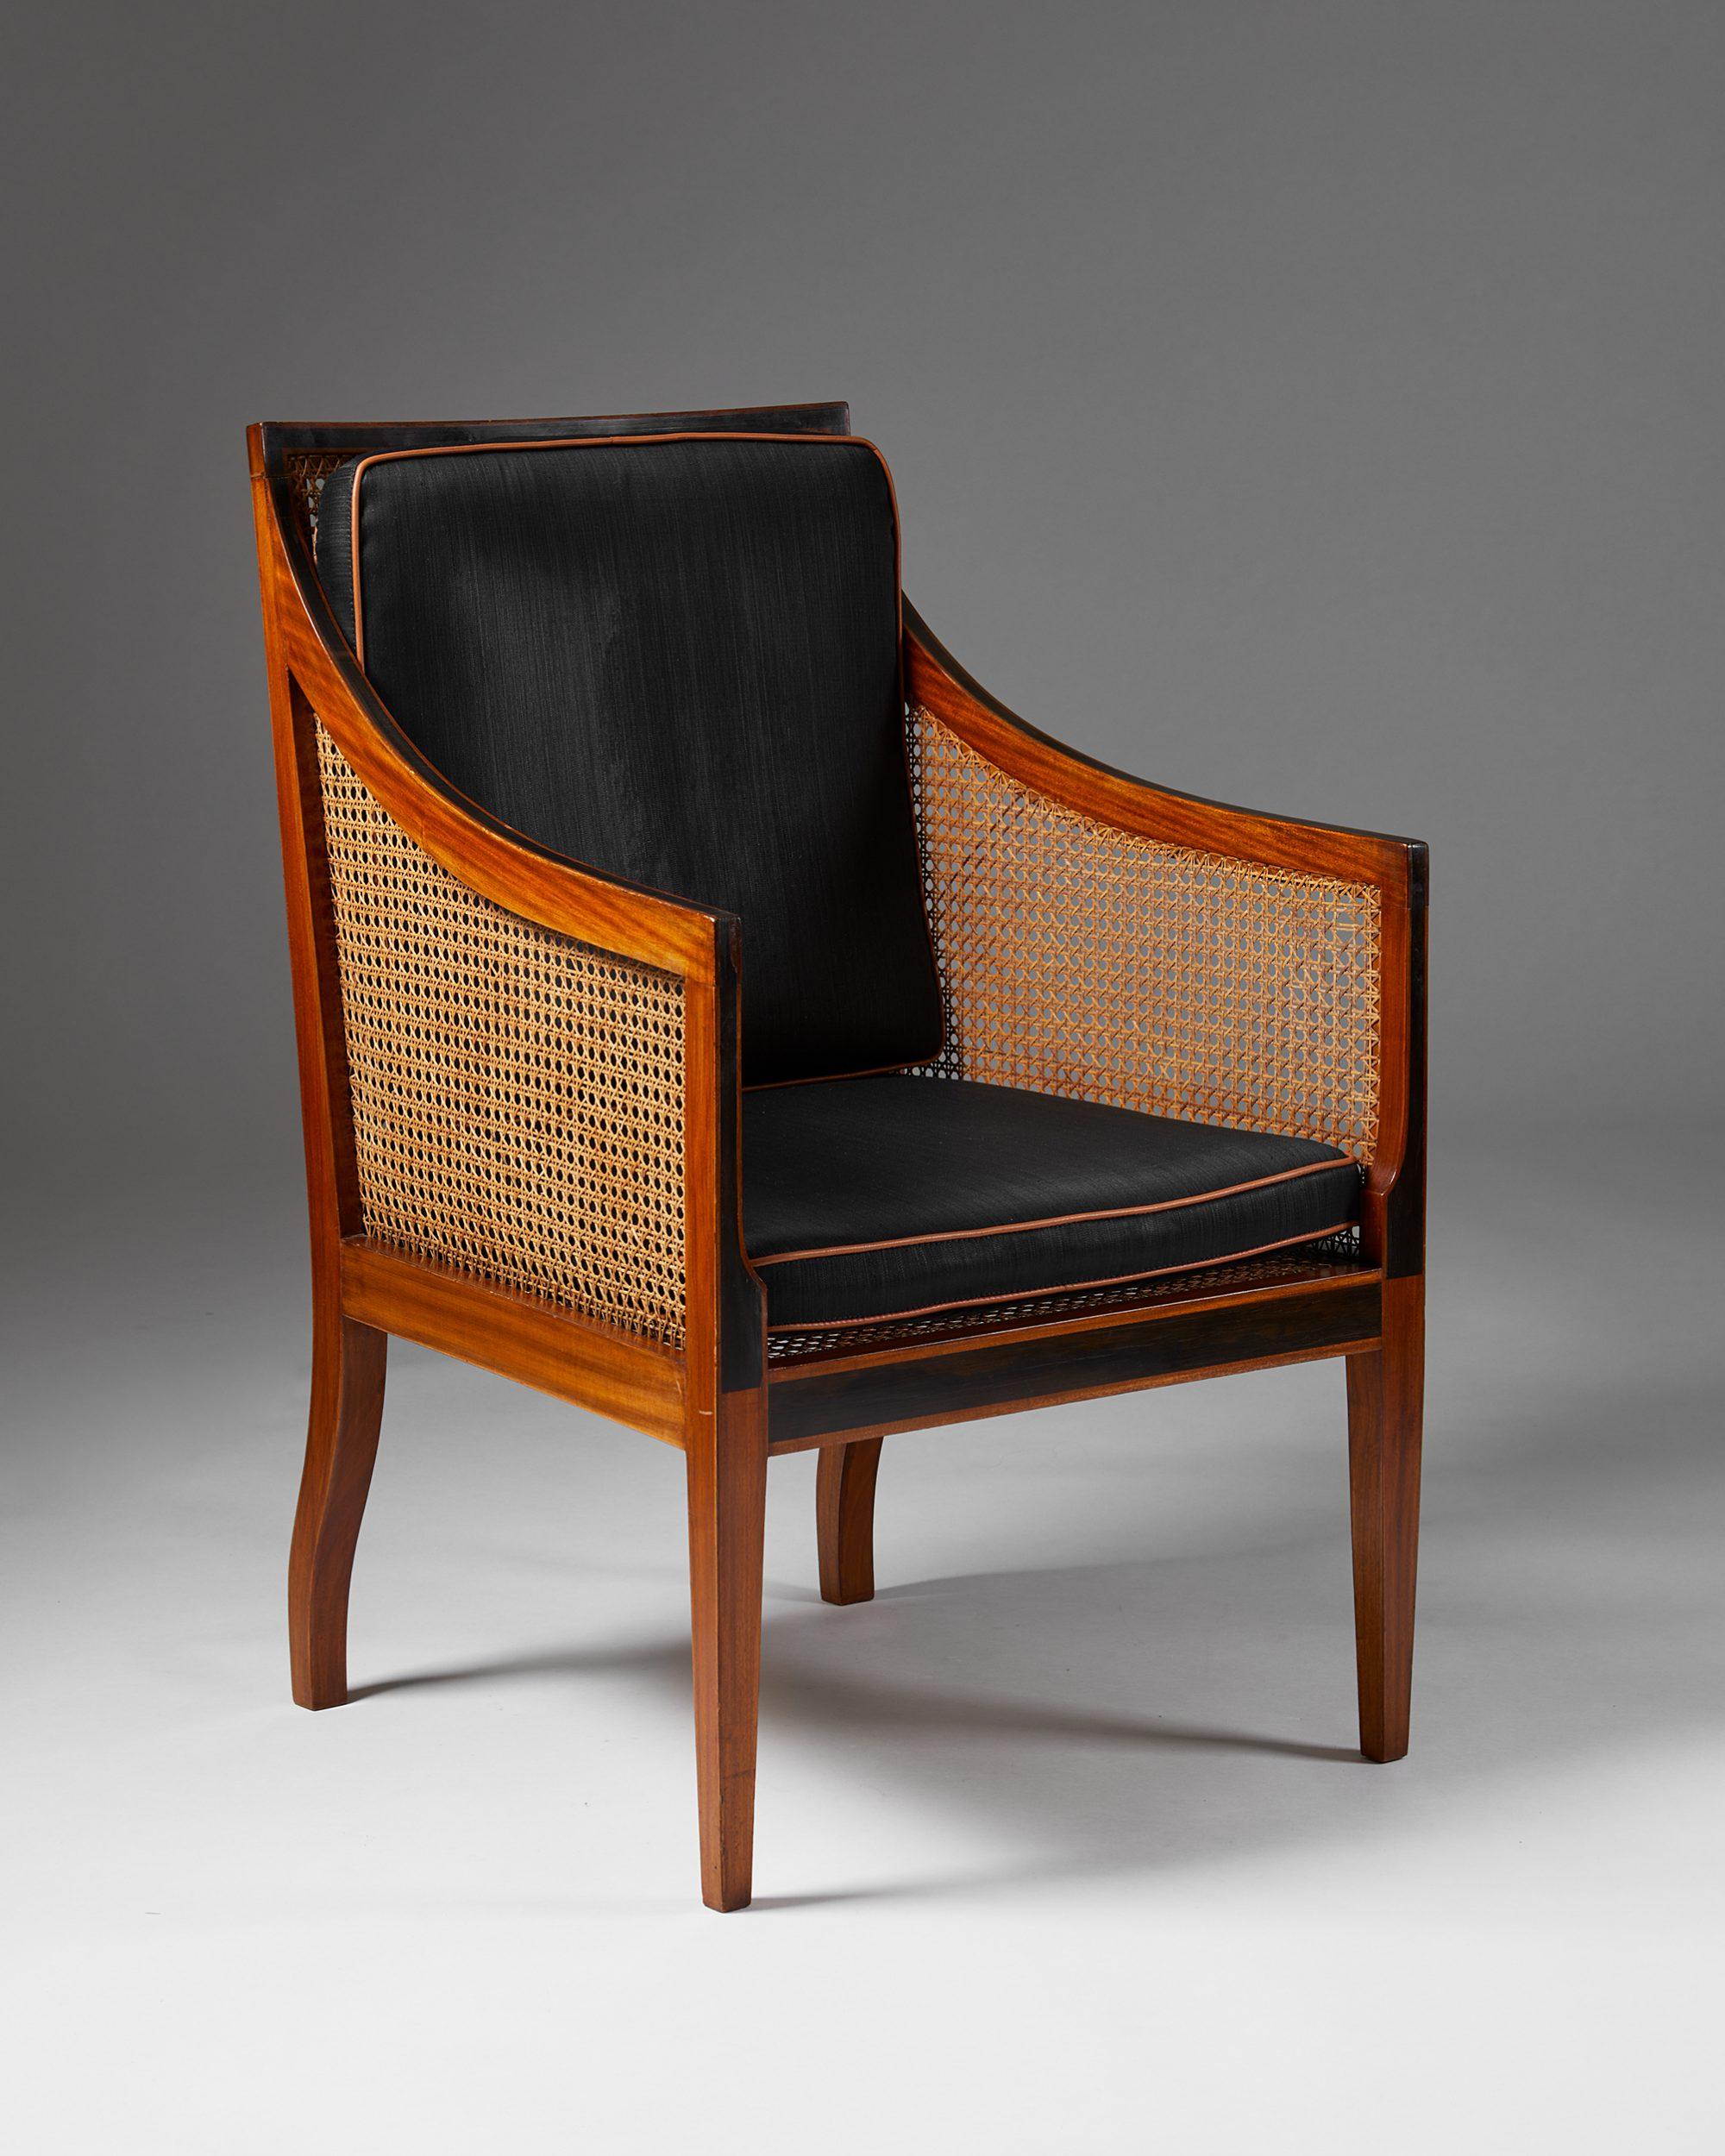 Fauteuil modèle 4488 conçu par Kaare Klint pour Rud. Rasmussen,
Danemark, années 1930.

Garniture en acajou, ébène, rotin et crin noir avec passepoil en cuir cognac.

Klint trouvait que la chaise anglaise du XVIIIe siècle de son ami, dans laquelle